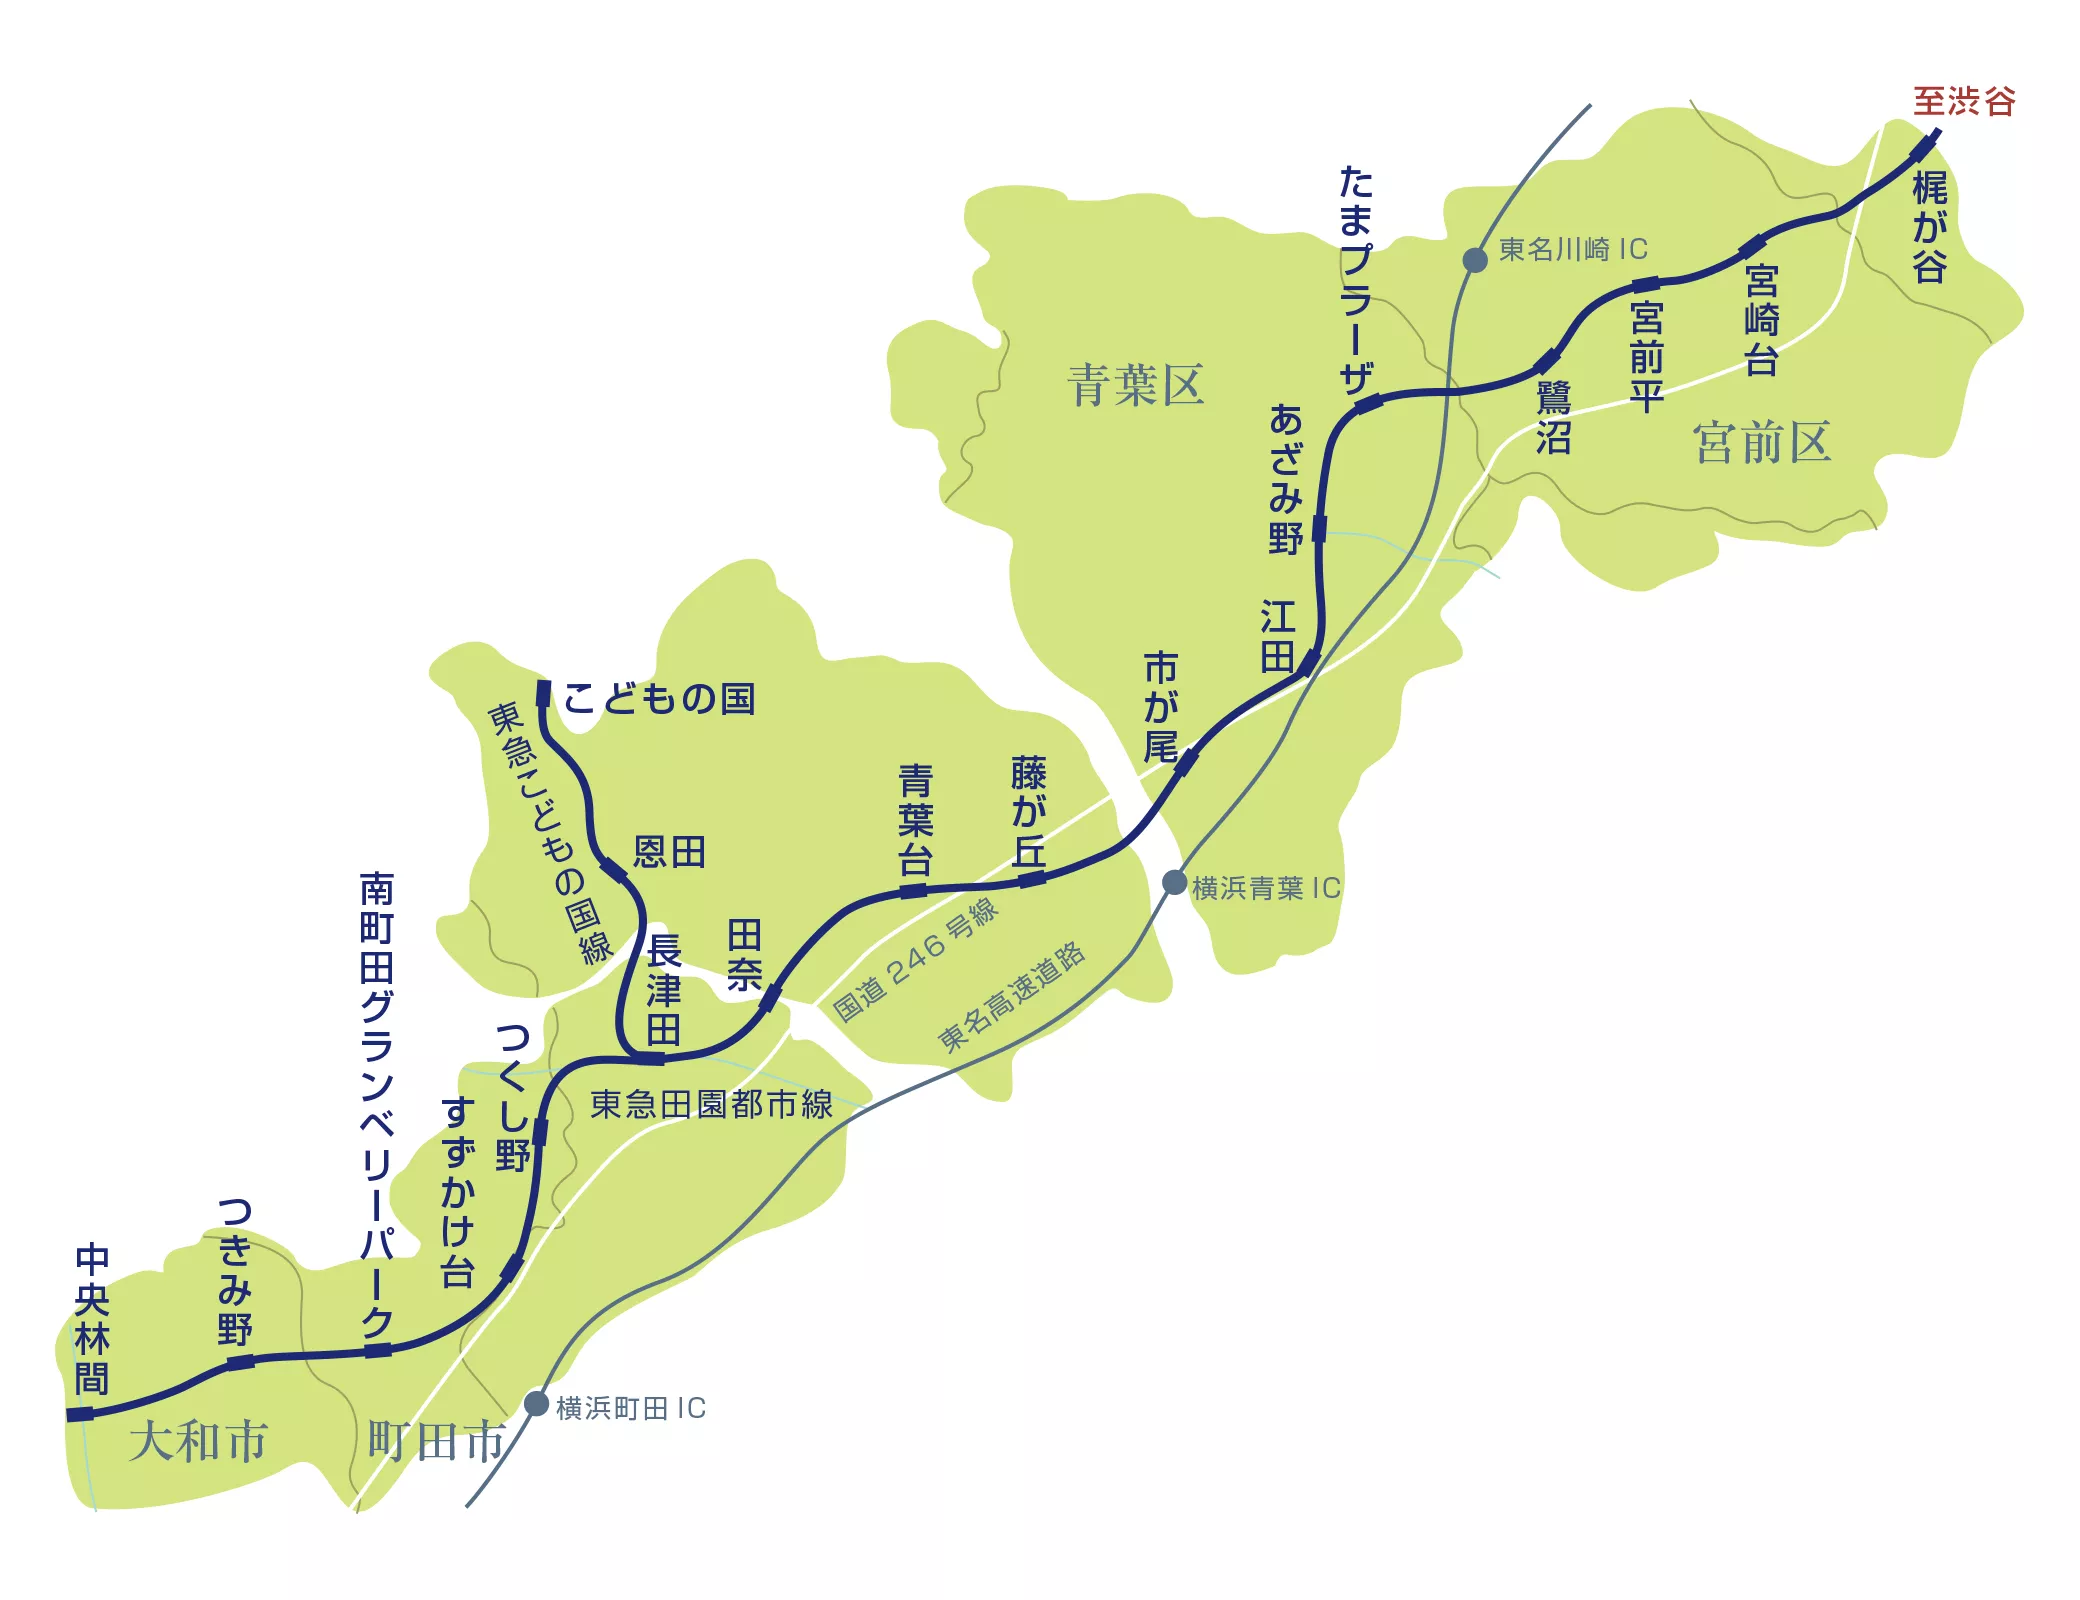 東急多摩田園都市イメージ図